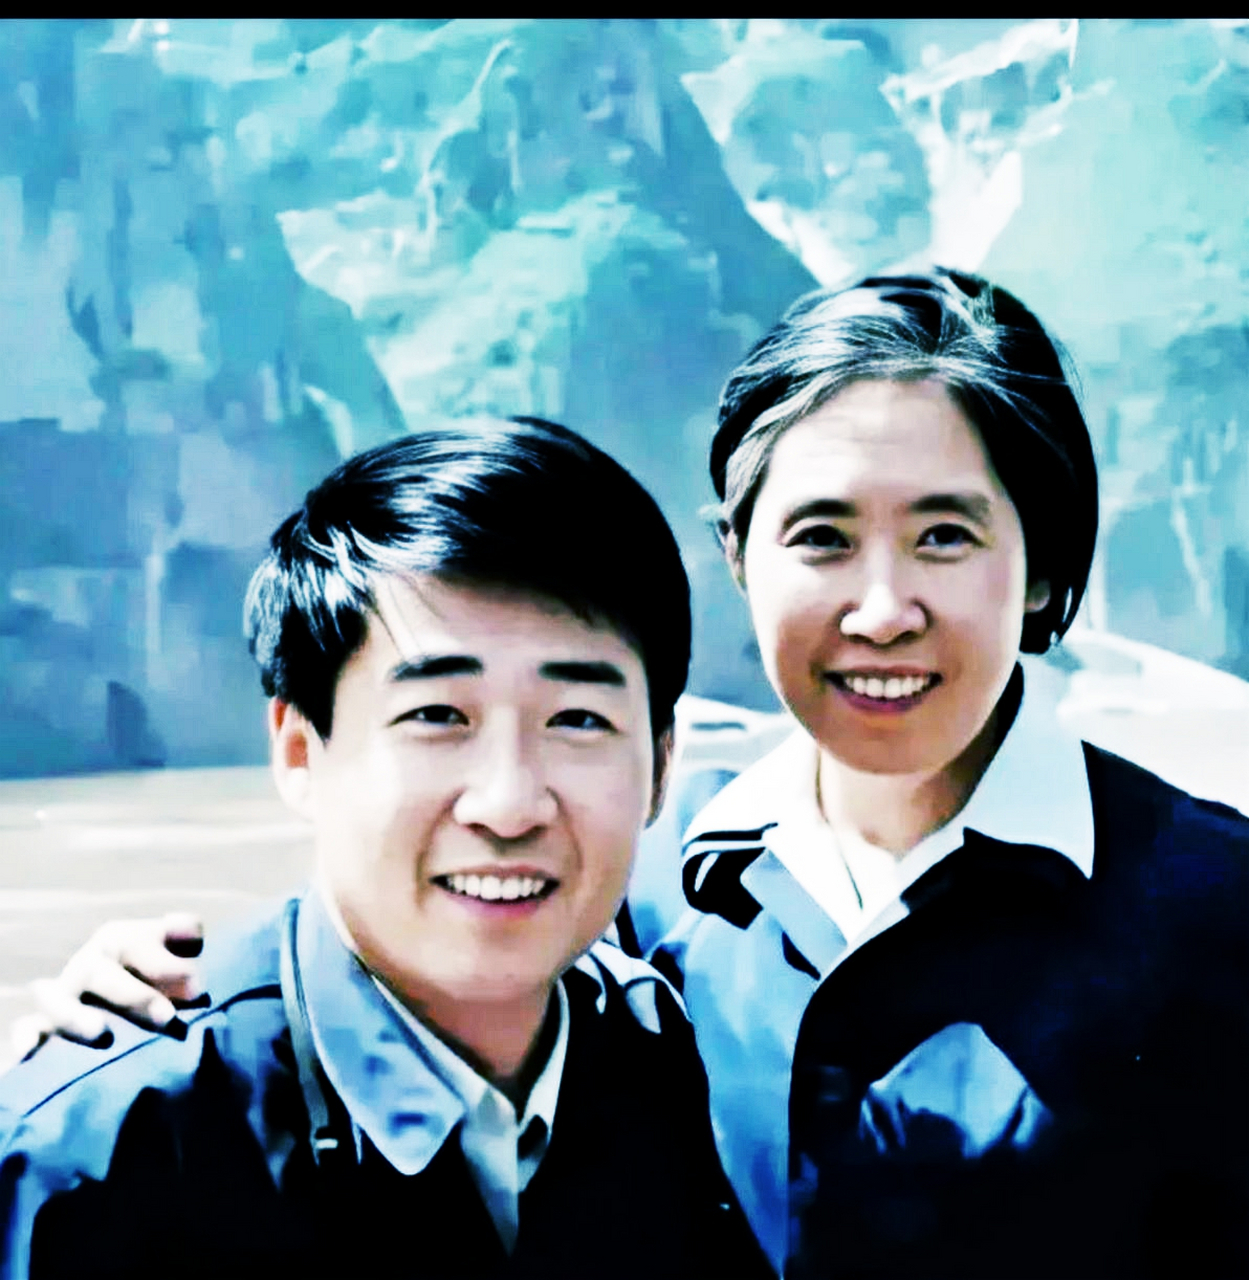 1979年,刘源与母亲王光美合影.照片捕捉到了母子俩幸福的瞬间.